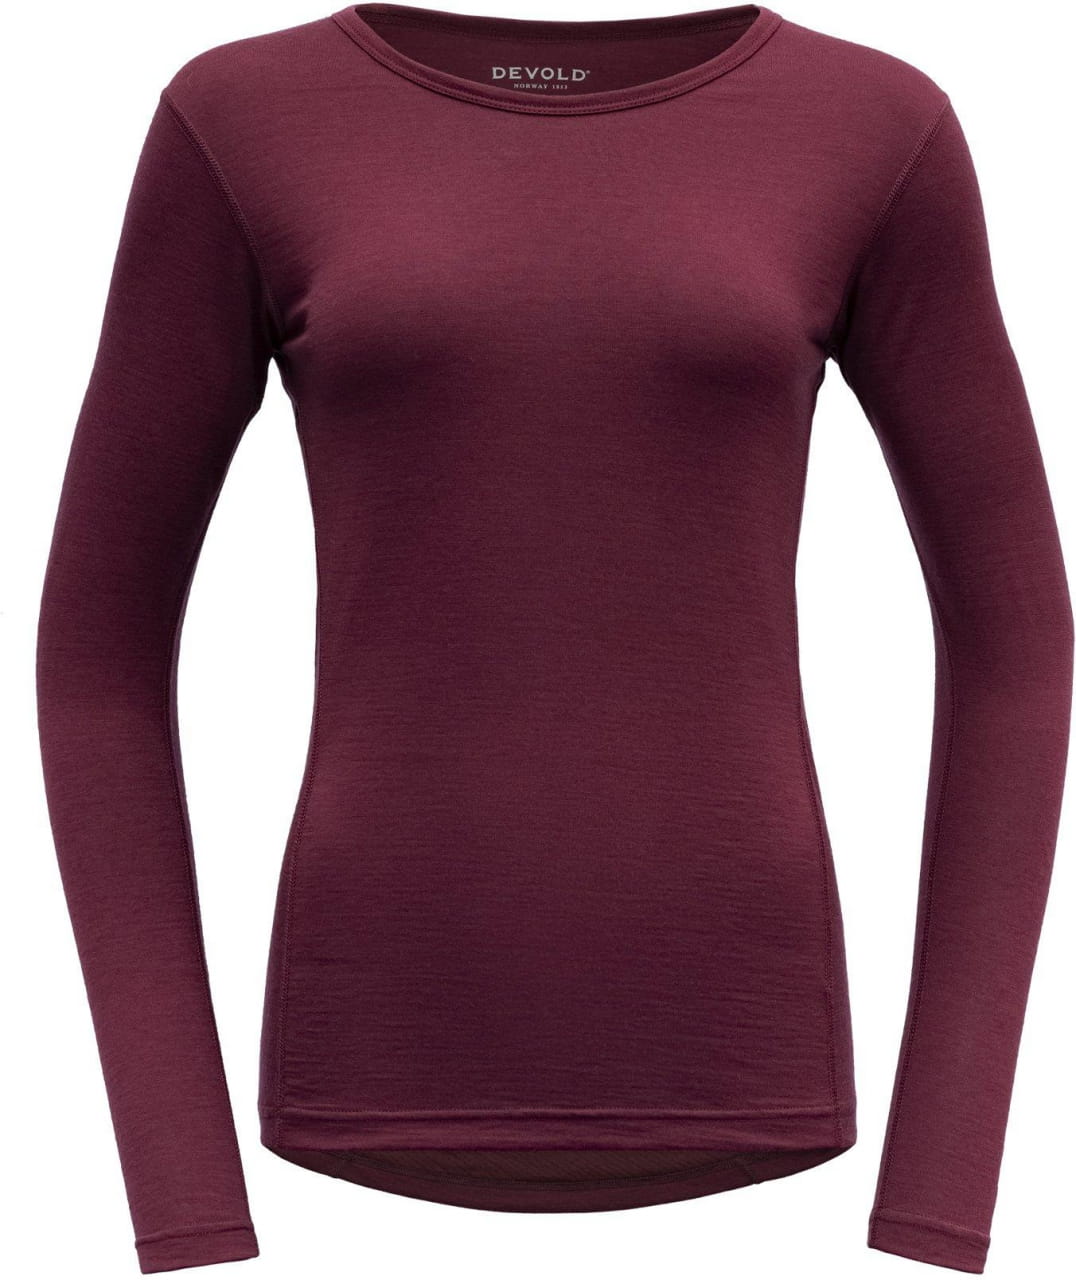 Camisa de lana para mujer Devold Breeze Woman Shirt